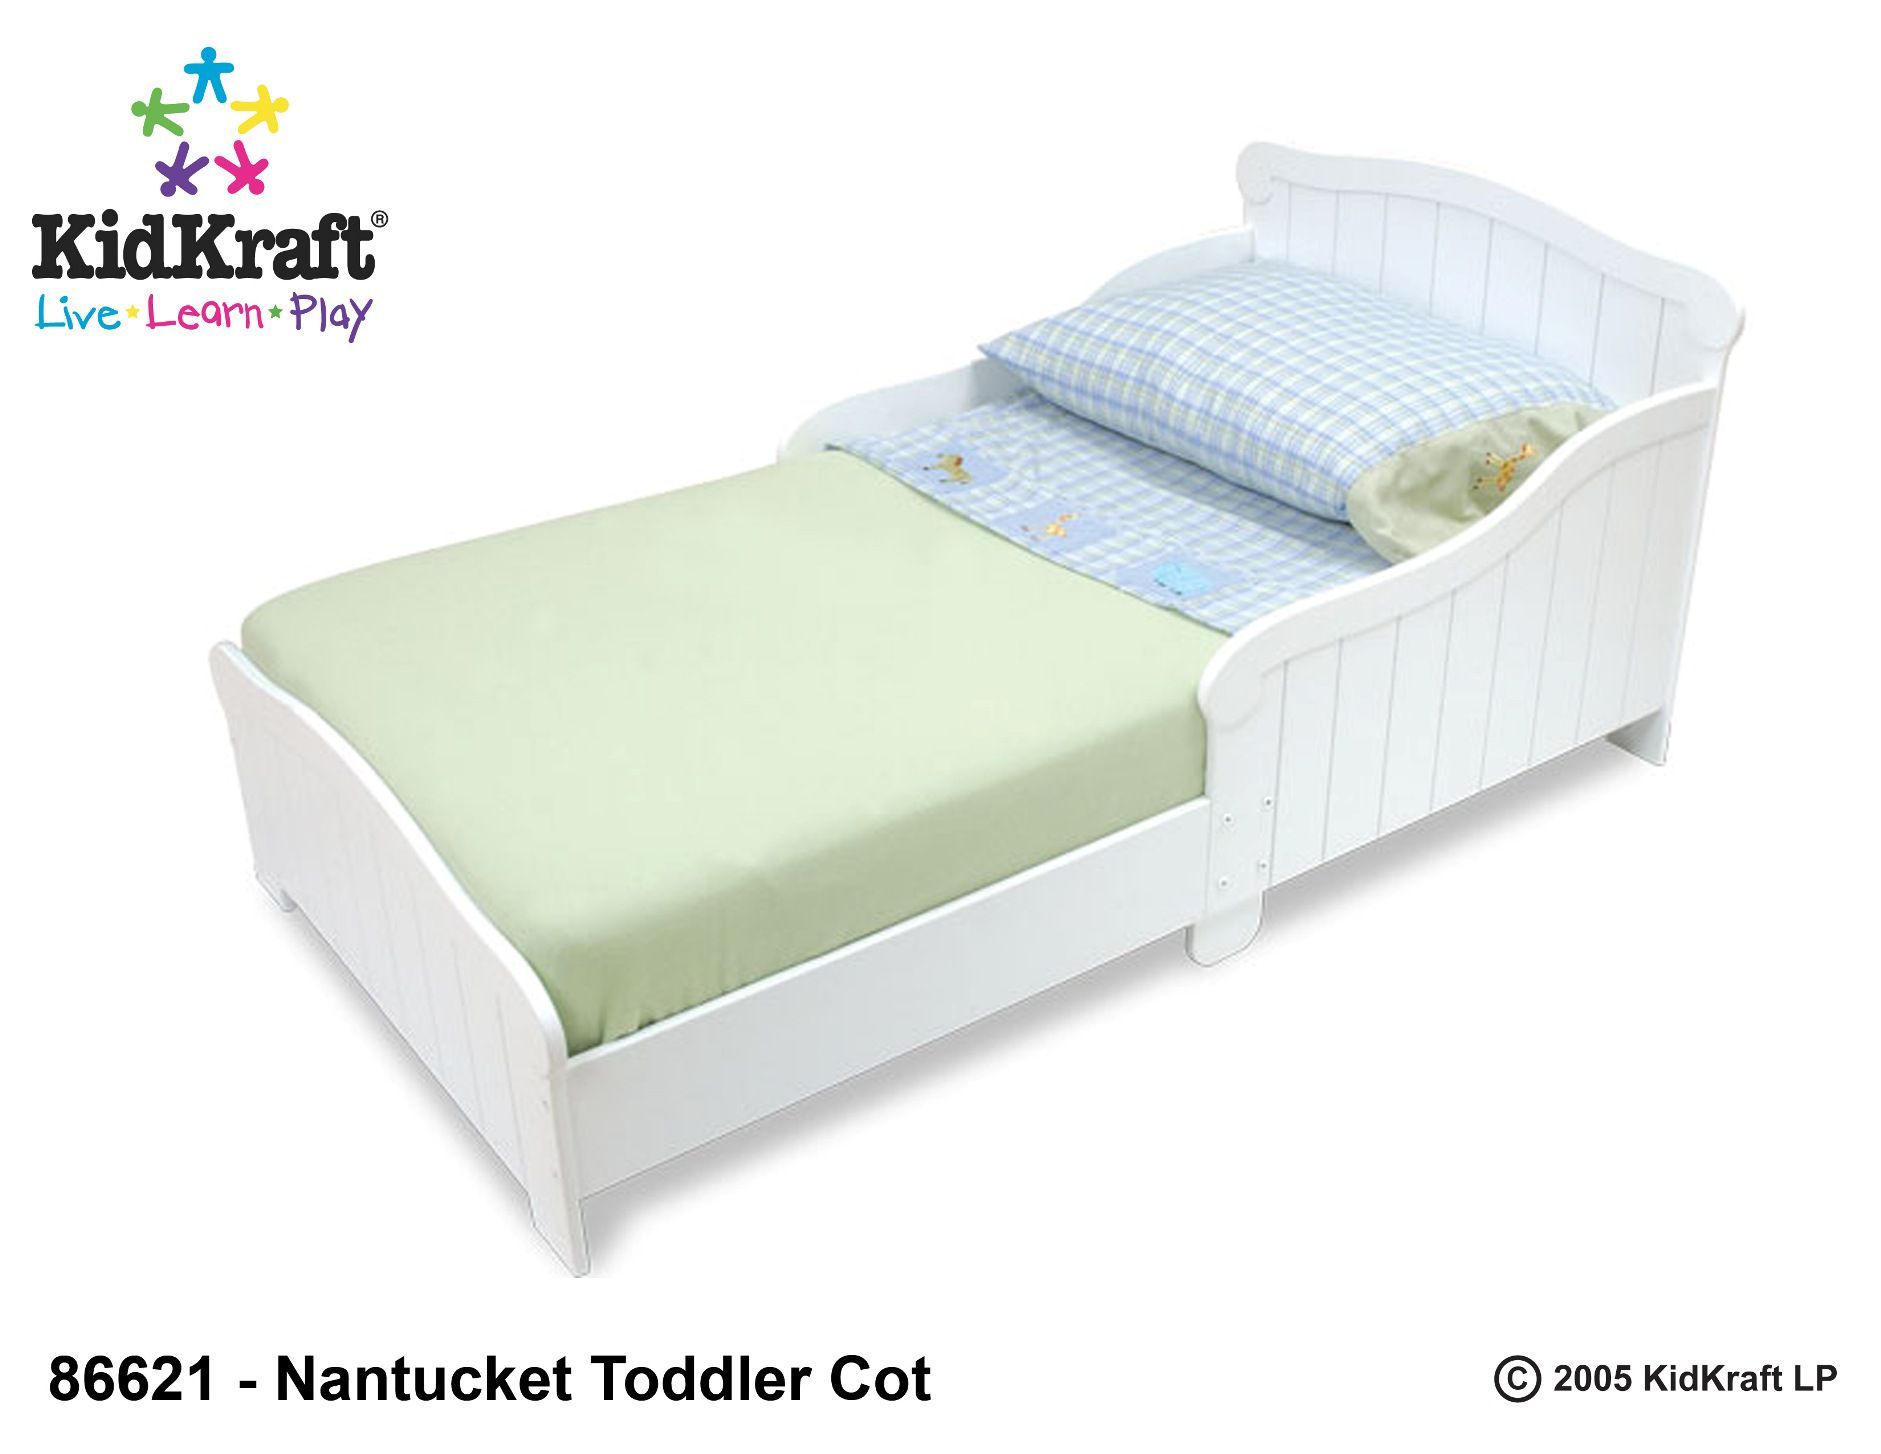 KidKraft Nantucket Toddler Cot